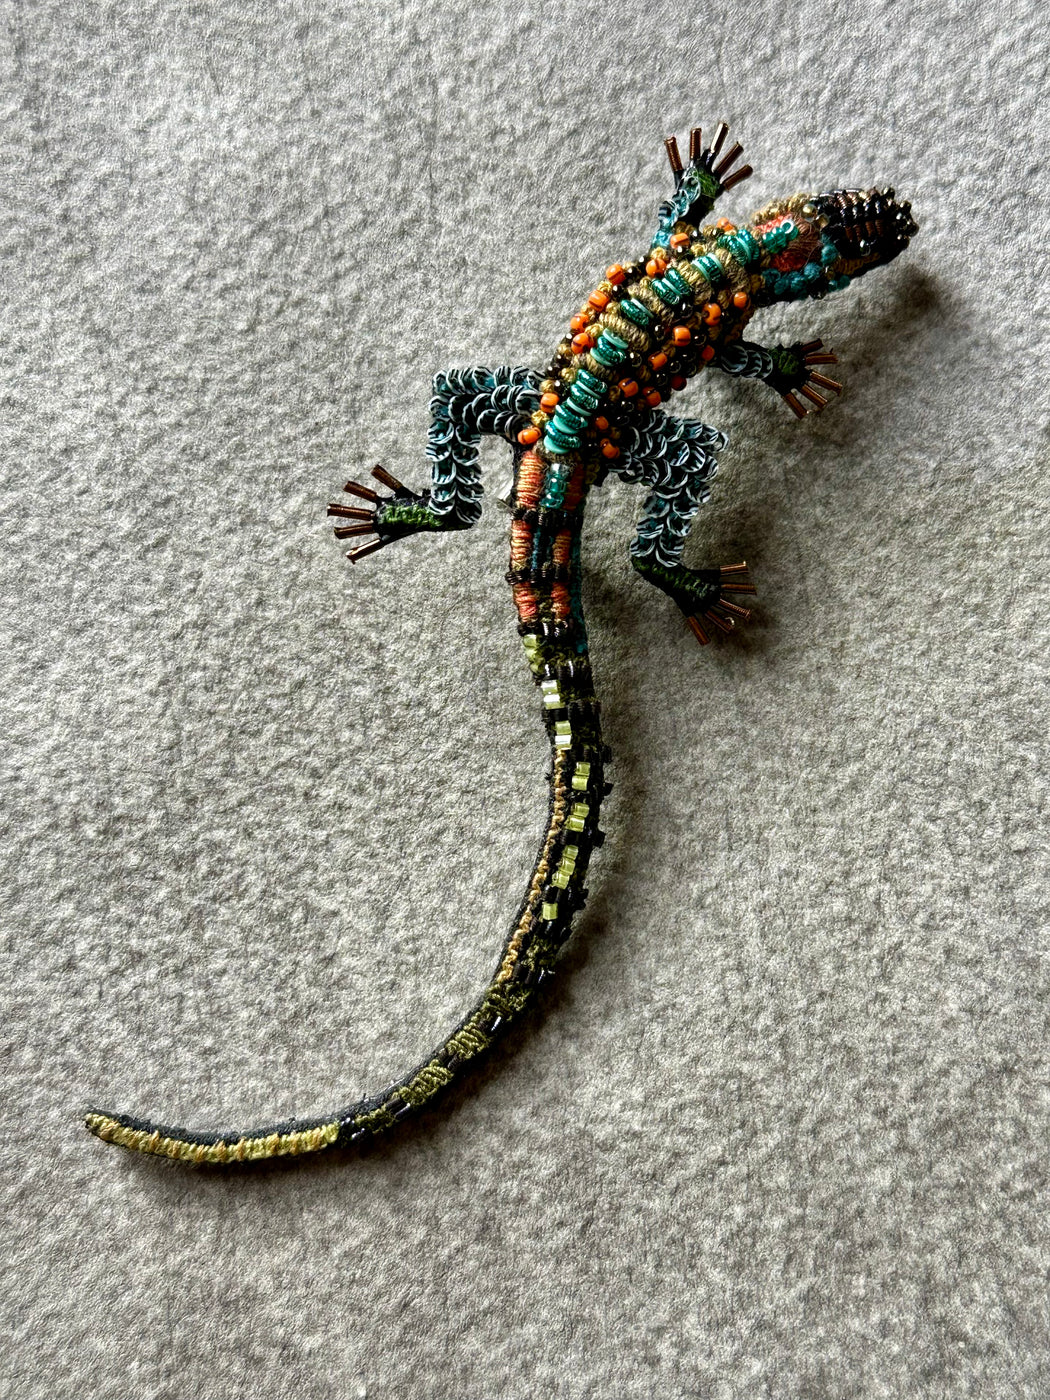 "Lizard" Brooch by Trovelore